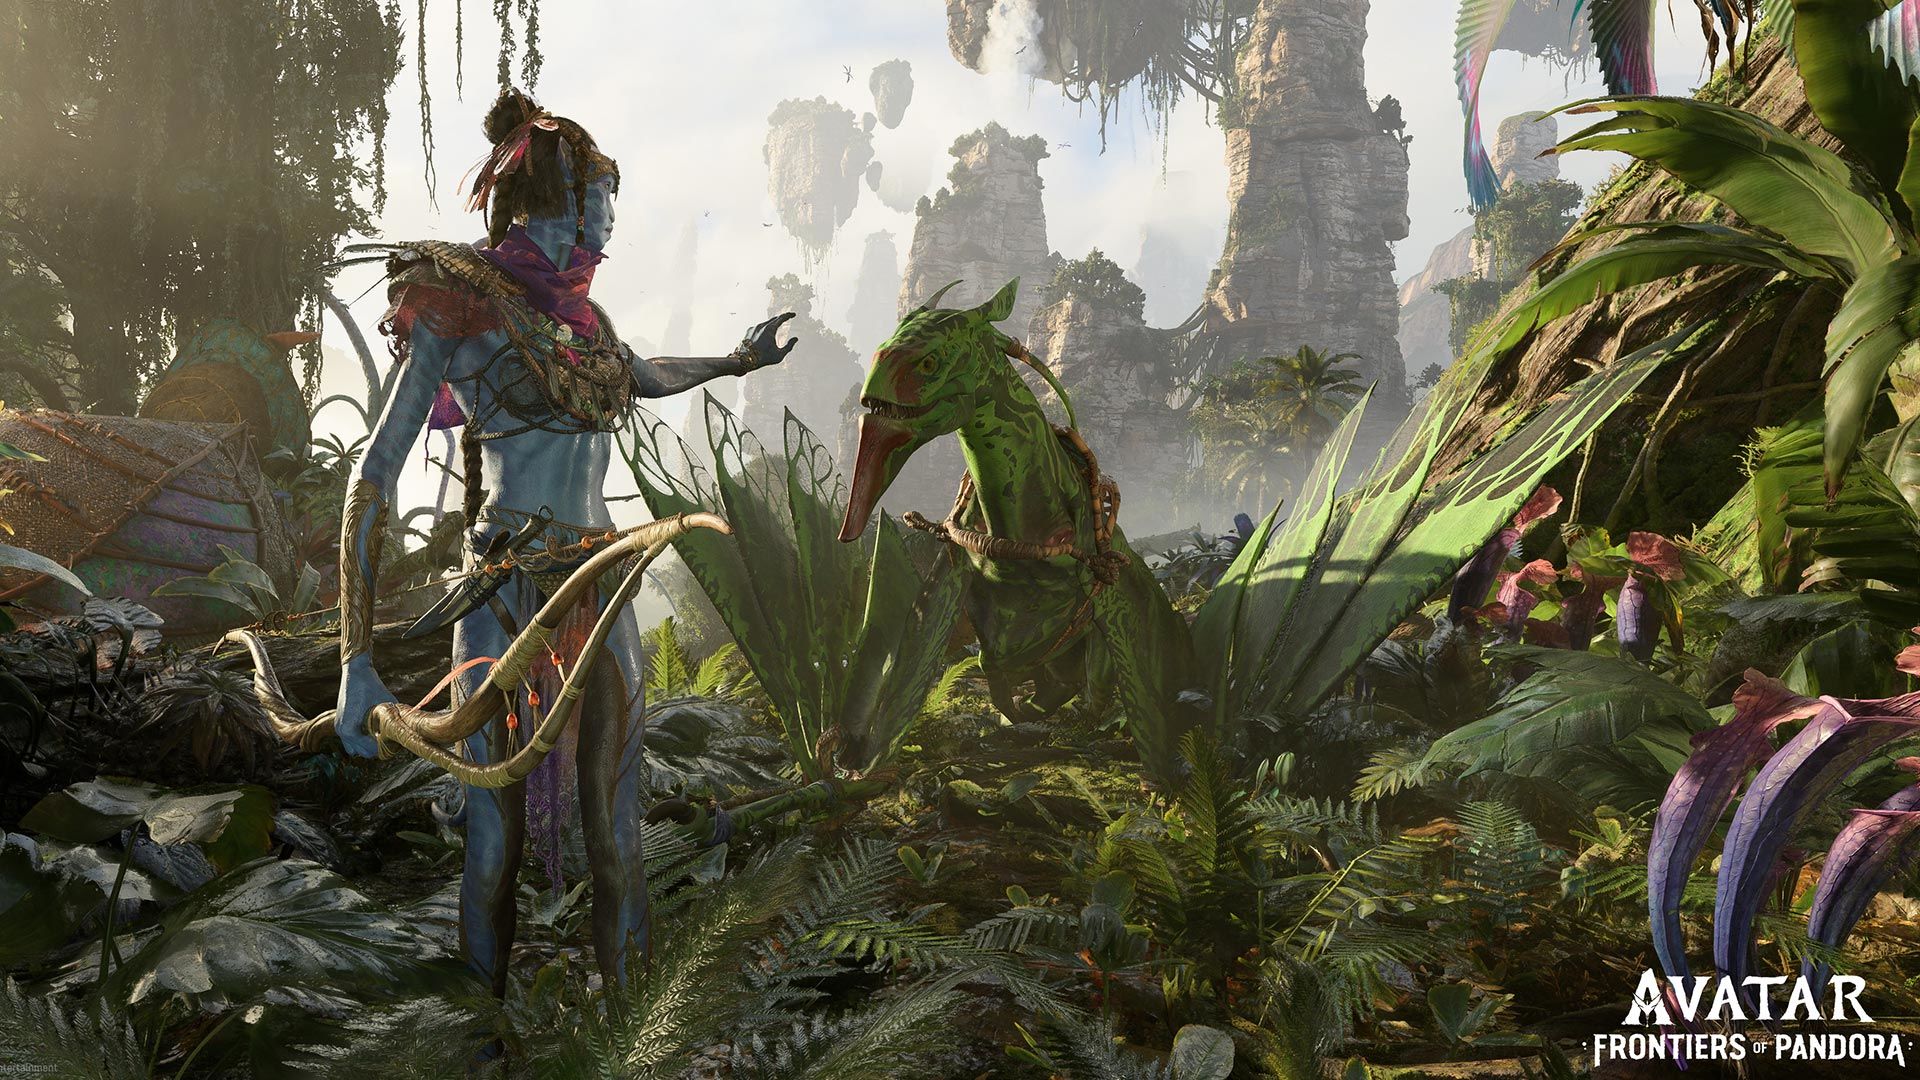 Avatar: Frontiers of Pandora với công nghệ mới đã được hé lộ. Với đồ họa tuyệt đẹp và những cải tiến đáng kể, trải nghiệm của người chơi sẽ được nâng cao hơn bao giờ hết. Hãy sẵn sàng là người đầu tiên khám phá công nghệ mới này!